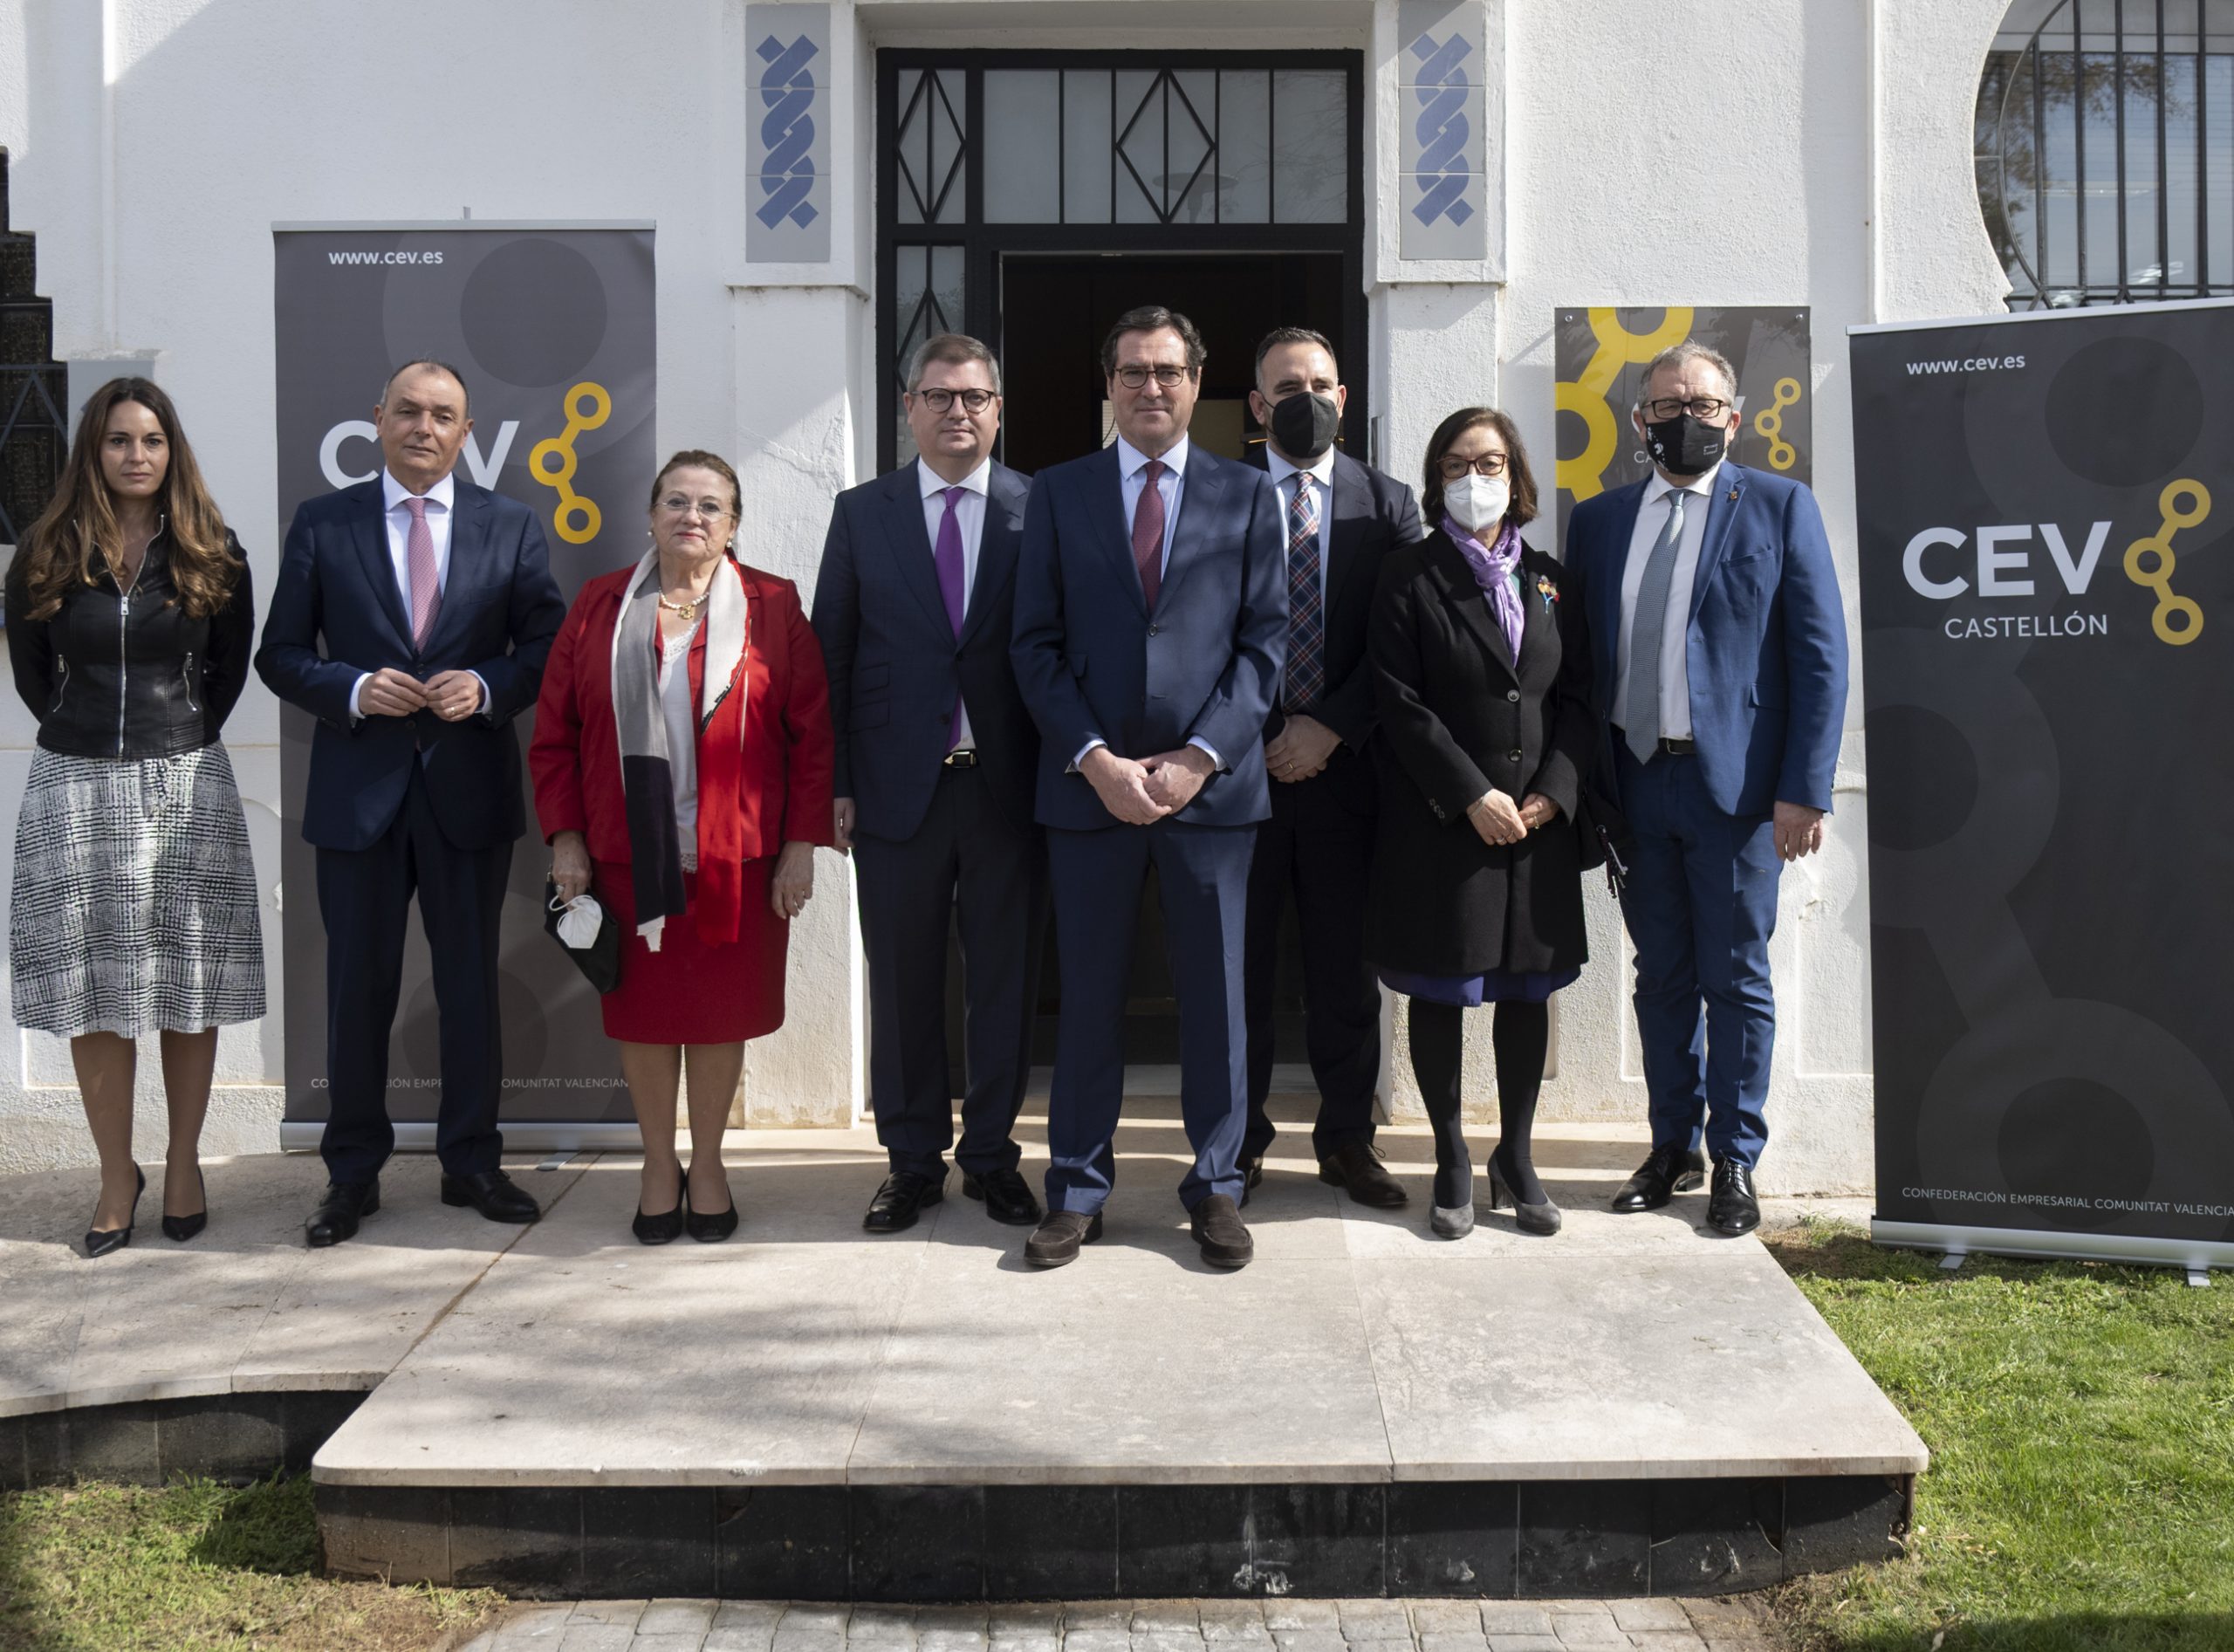 José Martí asiste a la inauguración de la nueva sede de la Confederación Empresarial de la Comunitat Valenciana (CEV) en Castellón